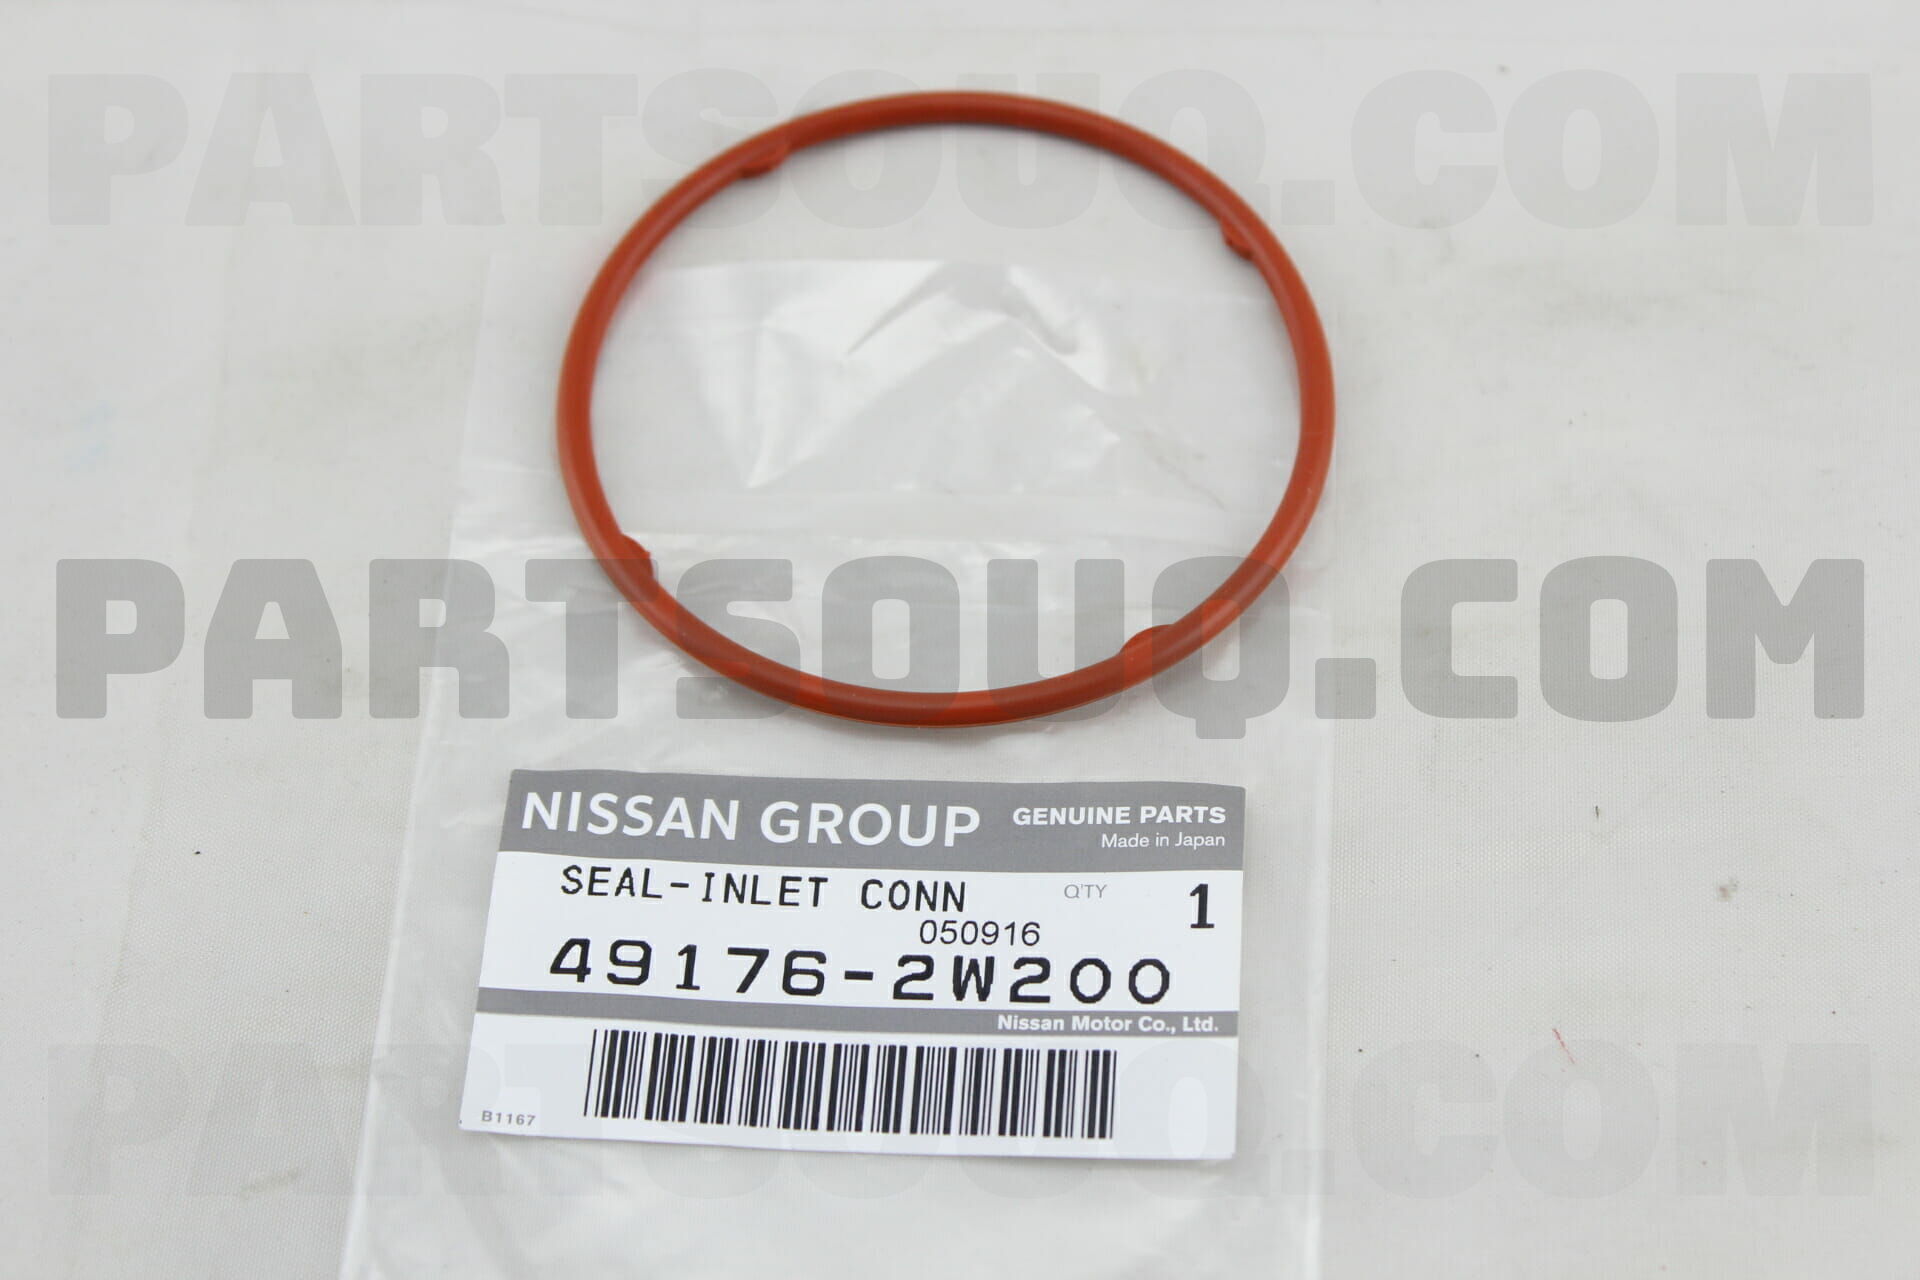 Nissan 21304-2w200. 491762w200. 64163-2w200.